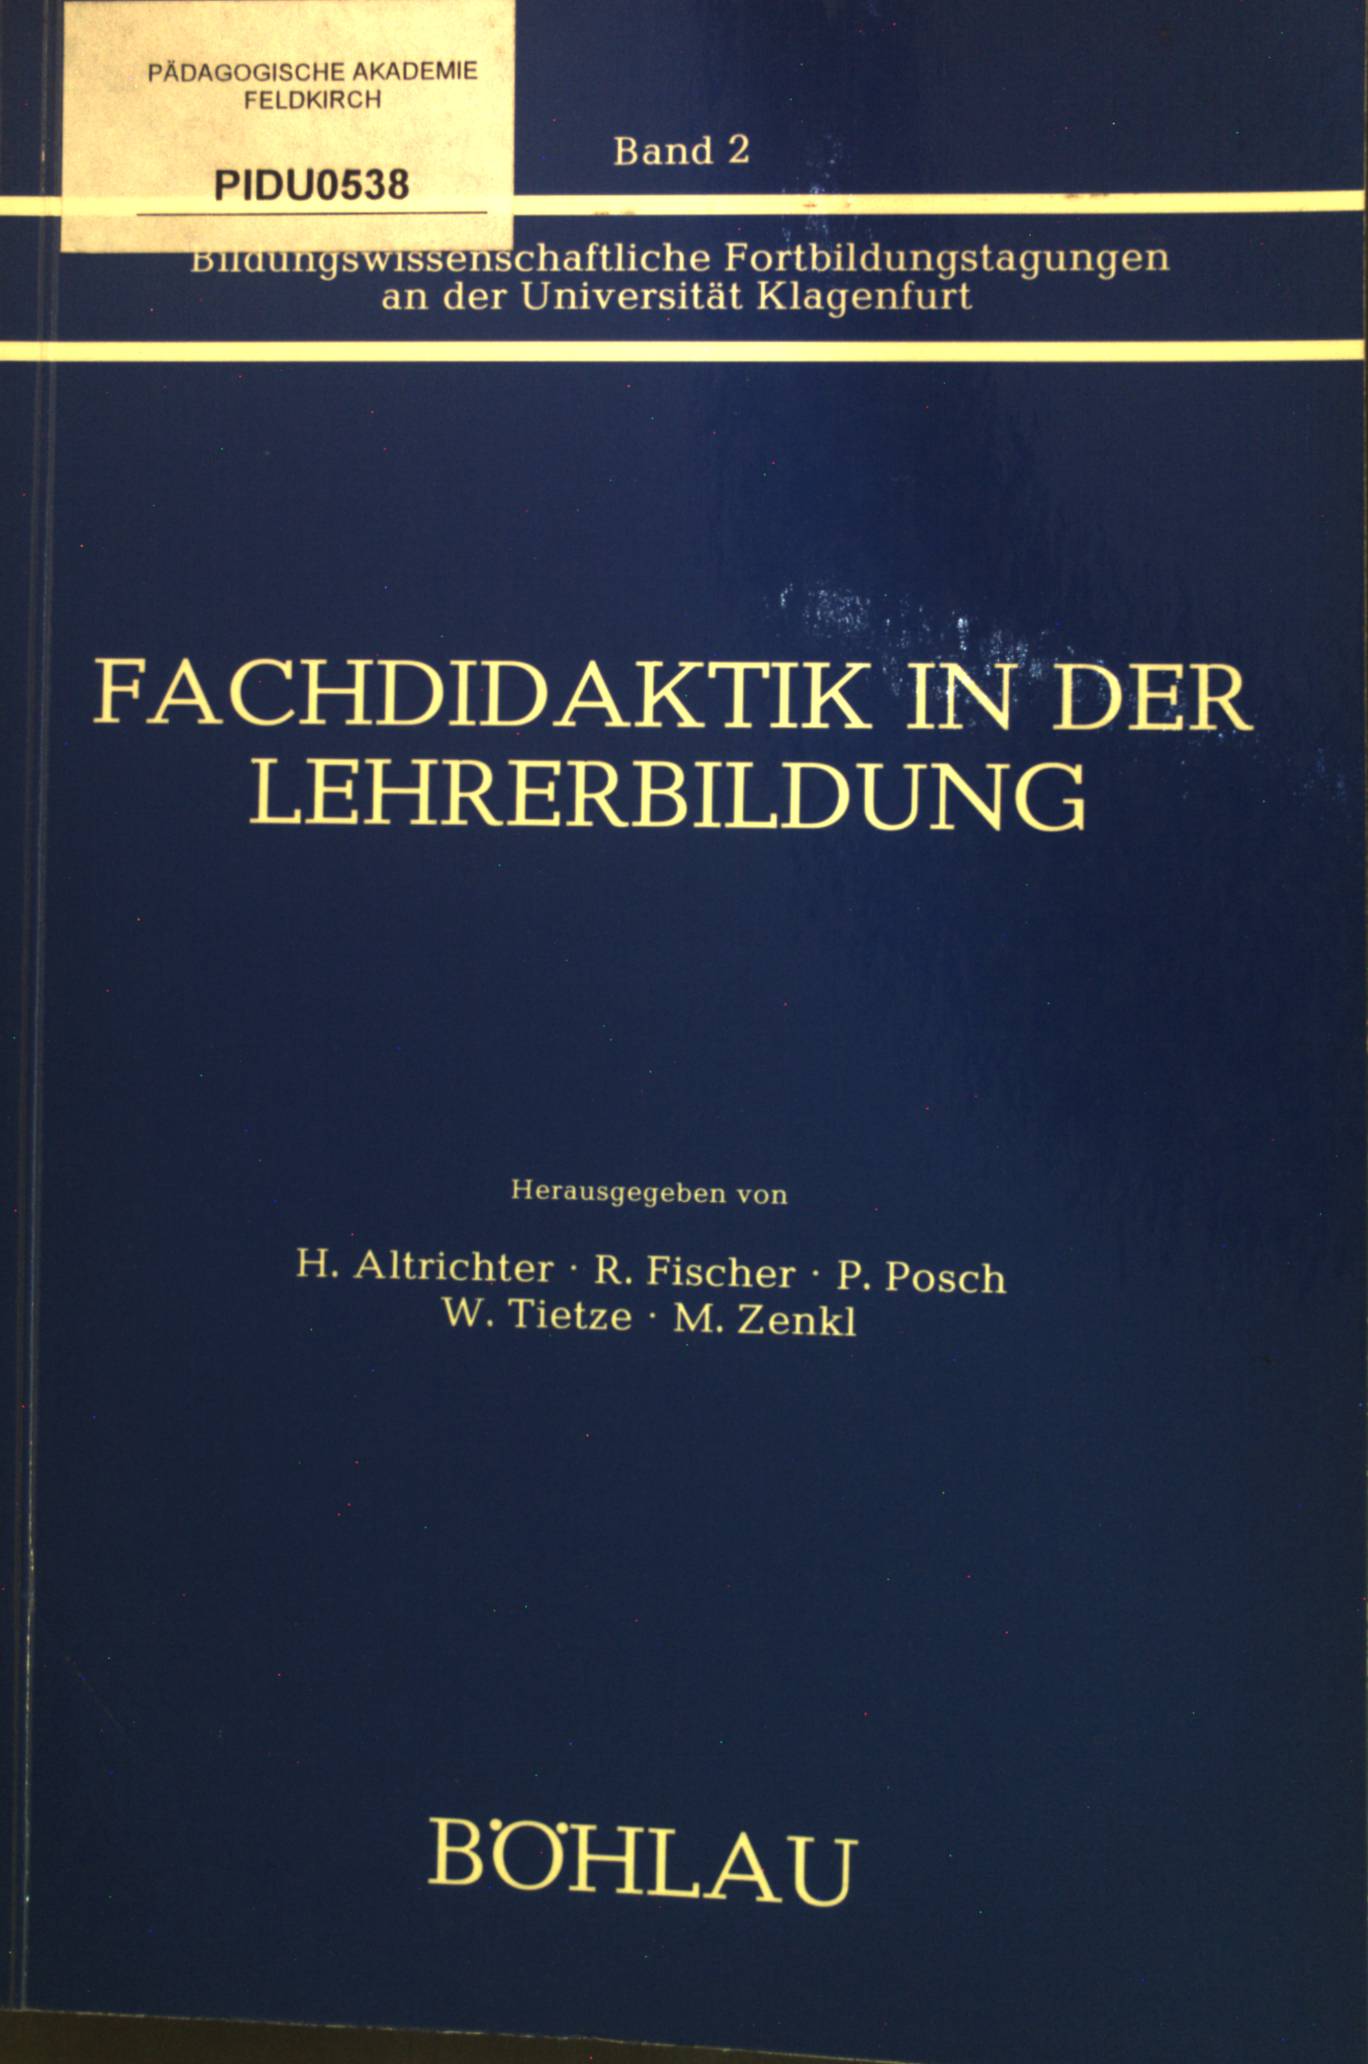 Fachdidaktik in der Lehrerbildung. Bildungswissenschaftliche Fortbildungstagungen an der Universität Klagenfurt; Bd. 2. - Altrichter, Herbert